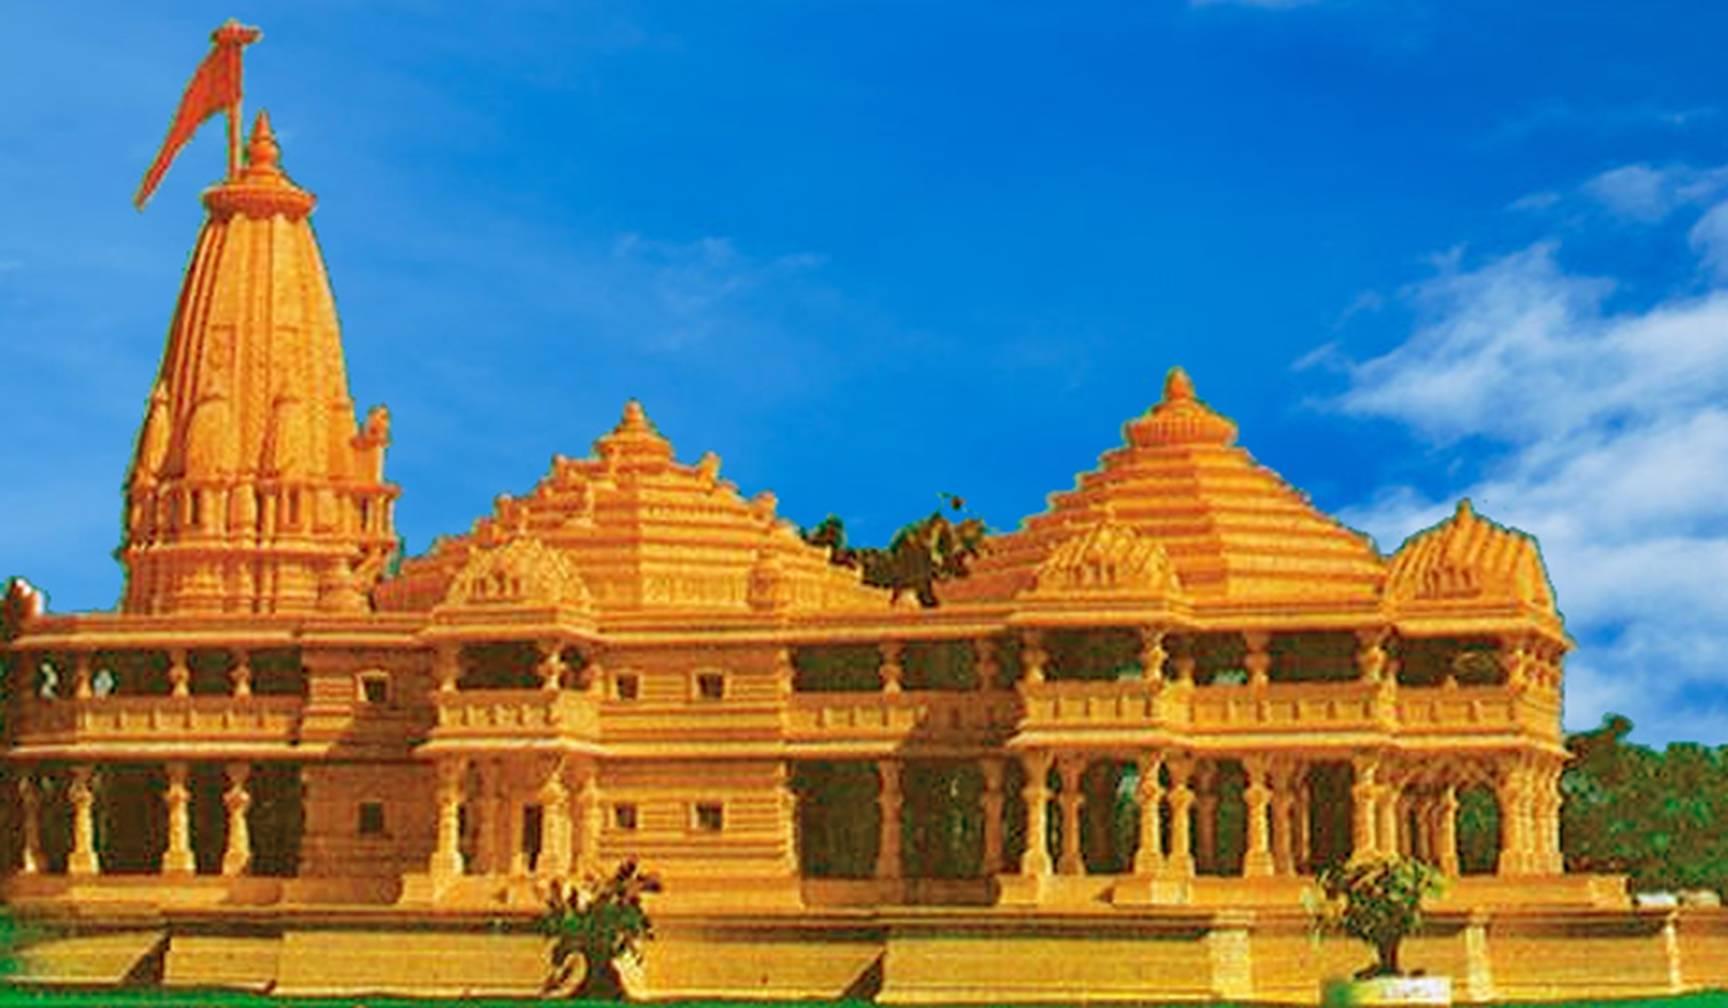 राम मंदिर निर्माण की आधारशिला रखी शंकराचार्य स्वरुपानंद सरस्वती ने साथ ही साधा PM पर निशाना